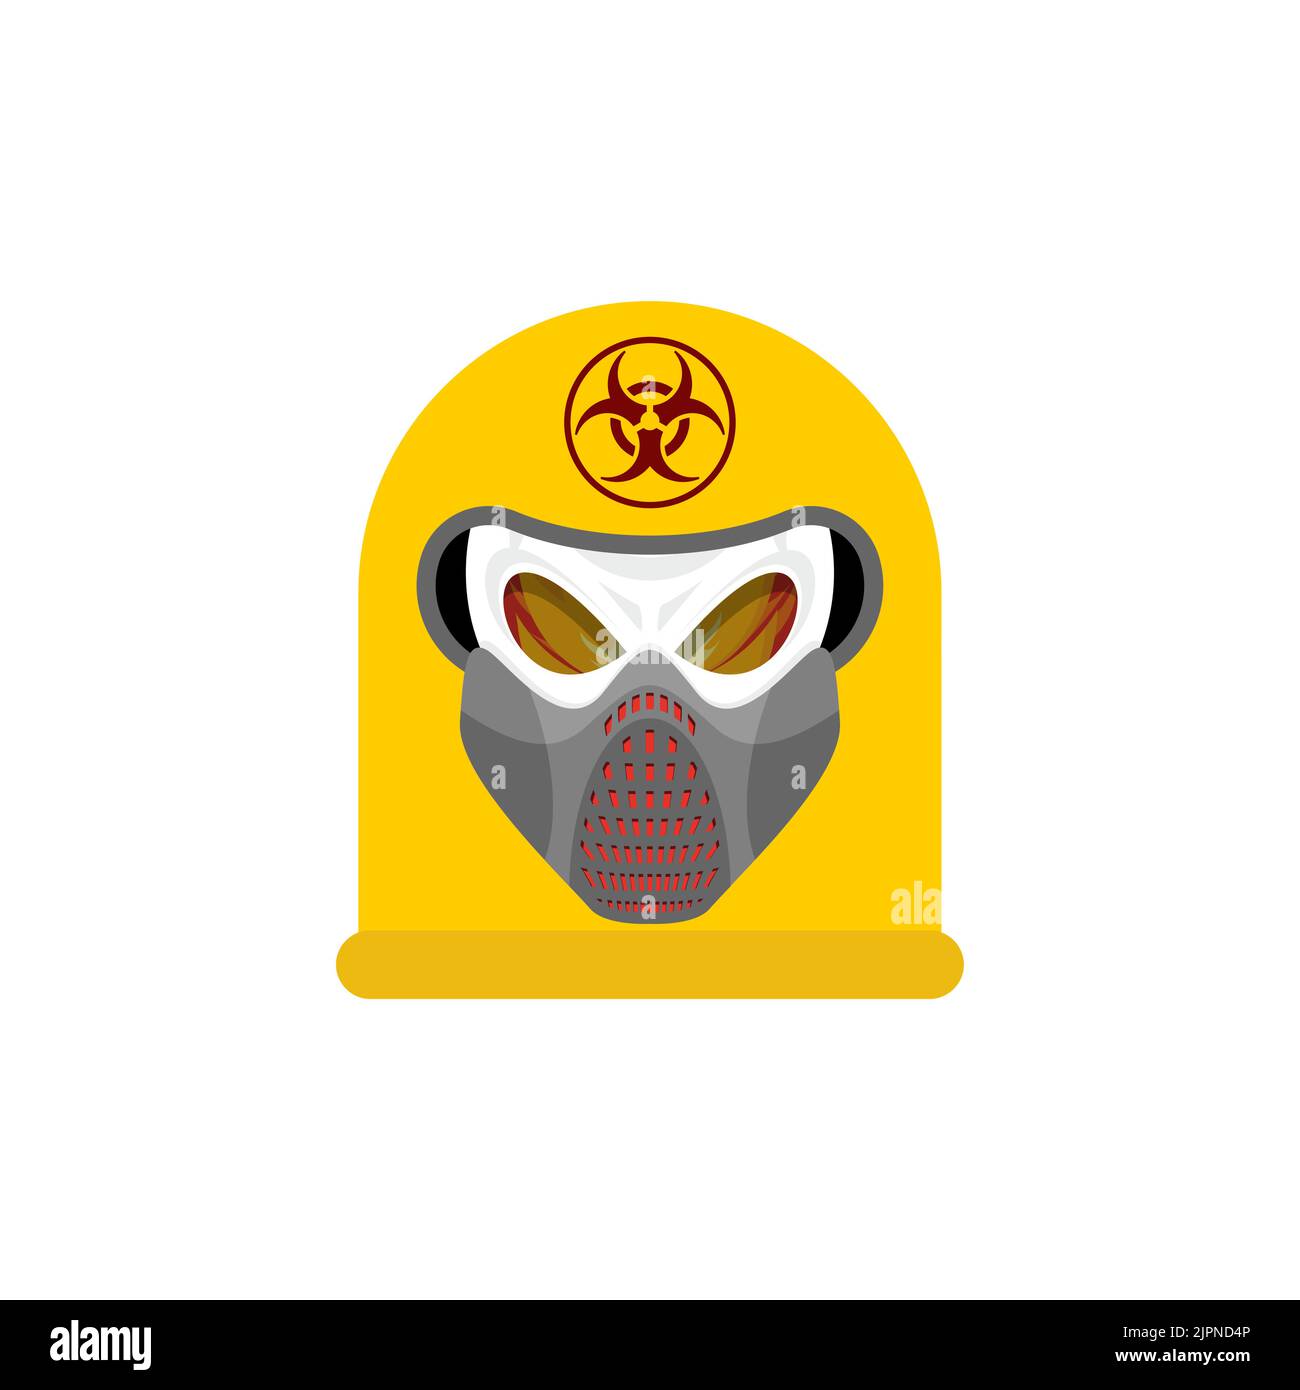 Cranio a rischio biologico nella maschera. Cranio in casco di protezione chimica. Segno post apocalisse. Icona apocalittica Illustrazione Vettoriale